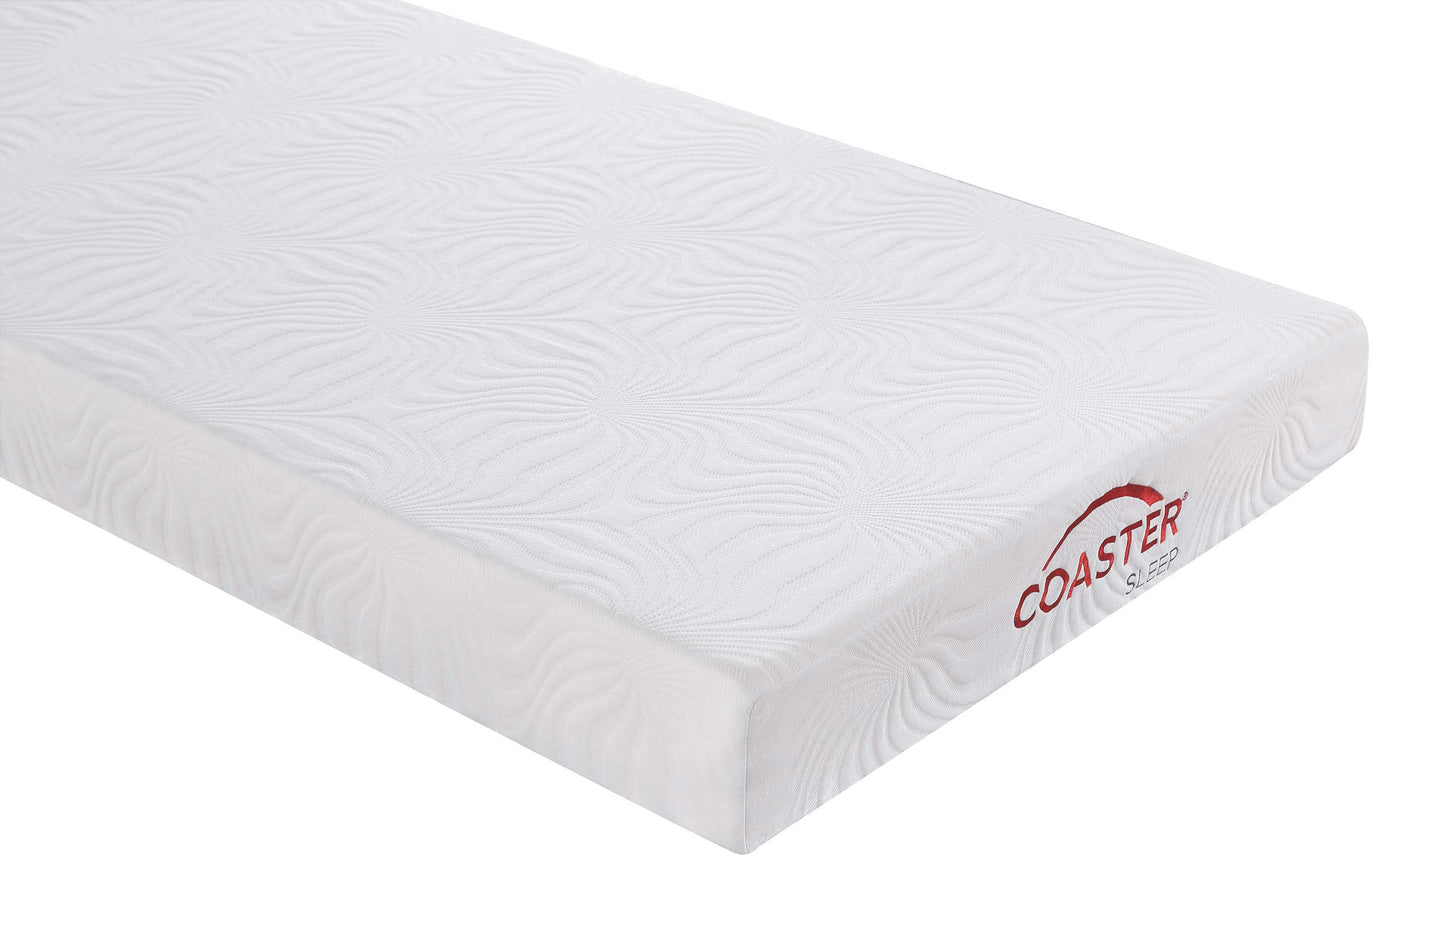 6" twin extra long memory foam mattress